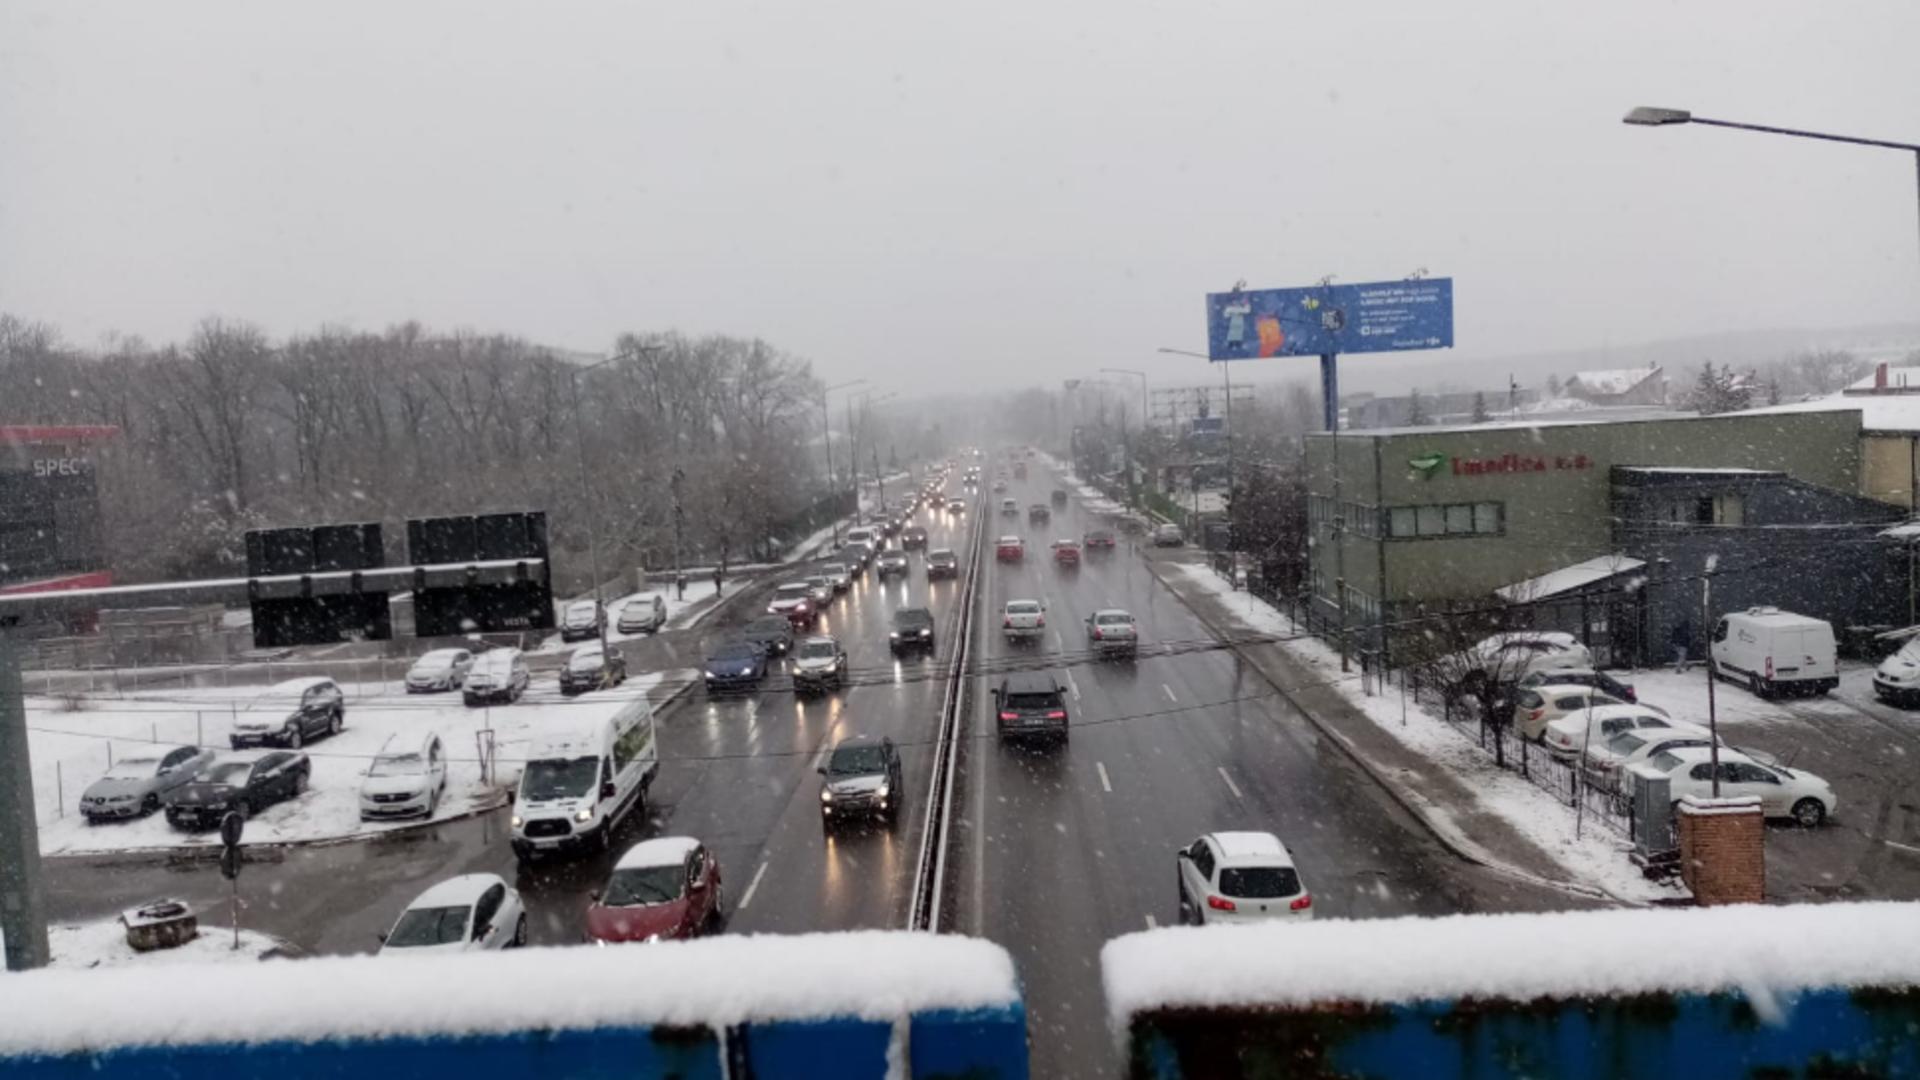 Vreme de iarnă în București (foto: Emanuel Focșan) 